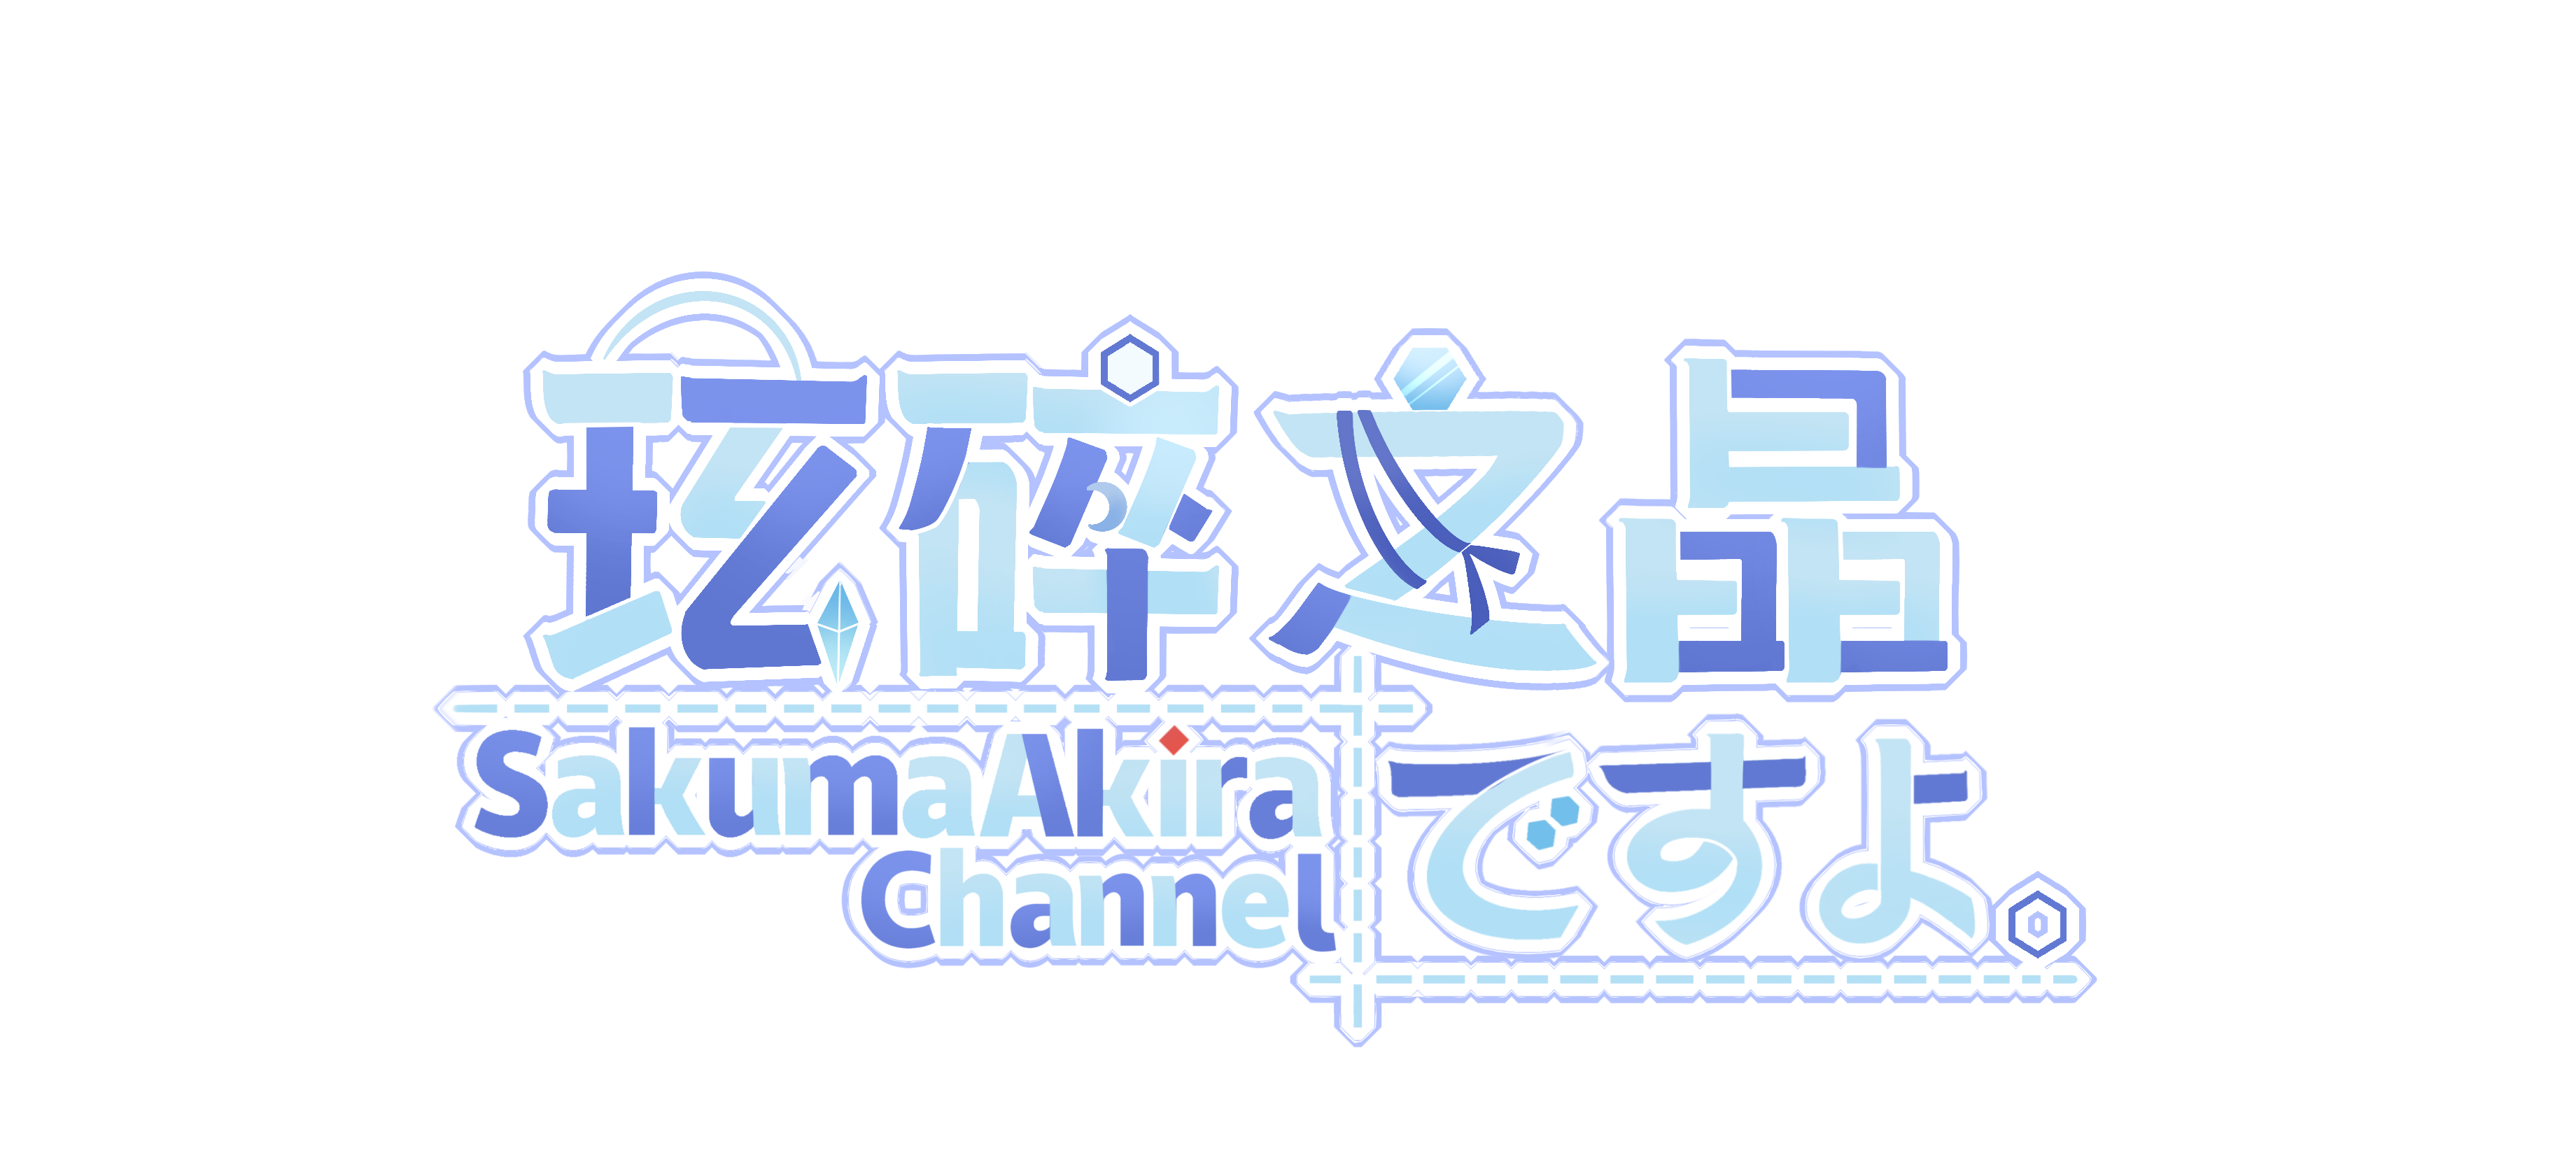 晶晶logo.png